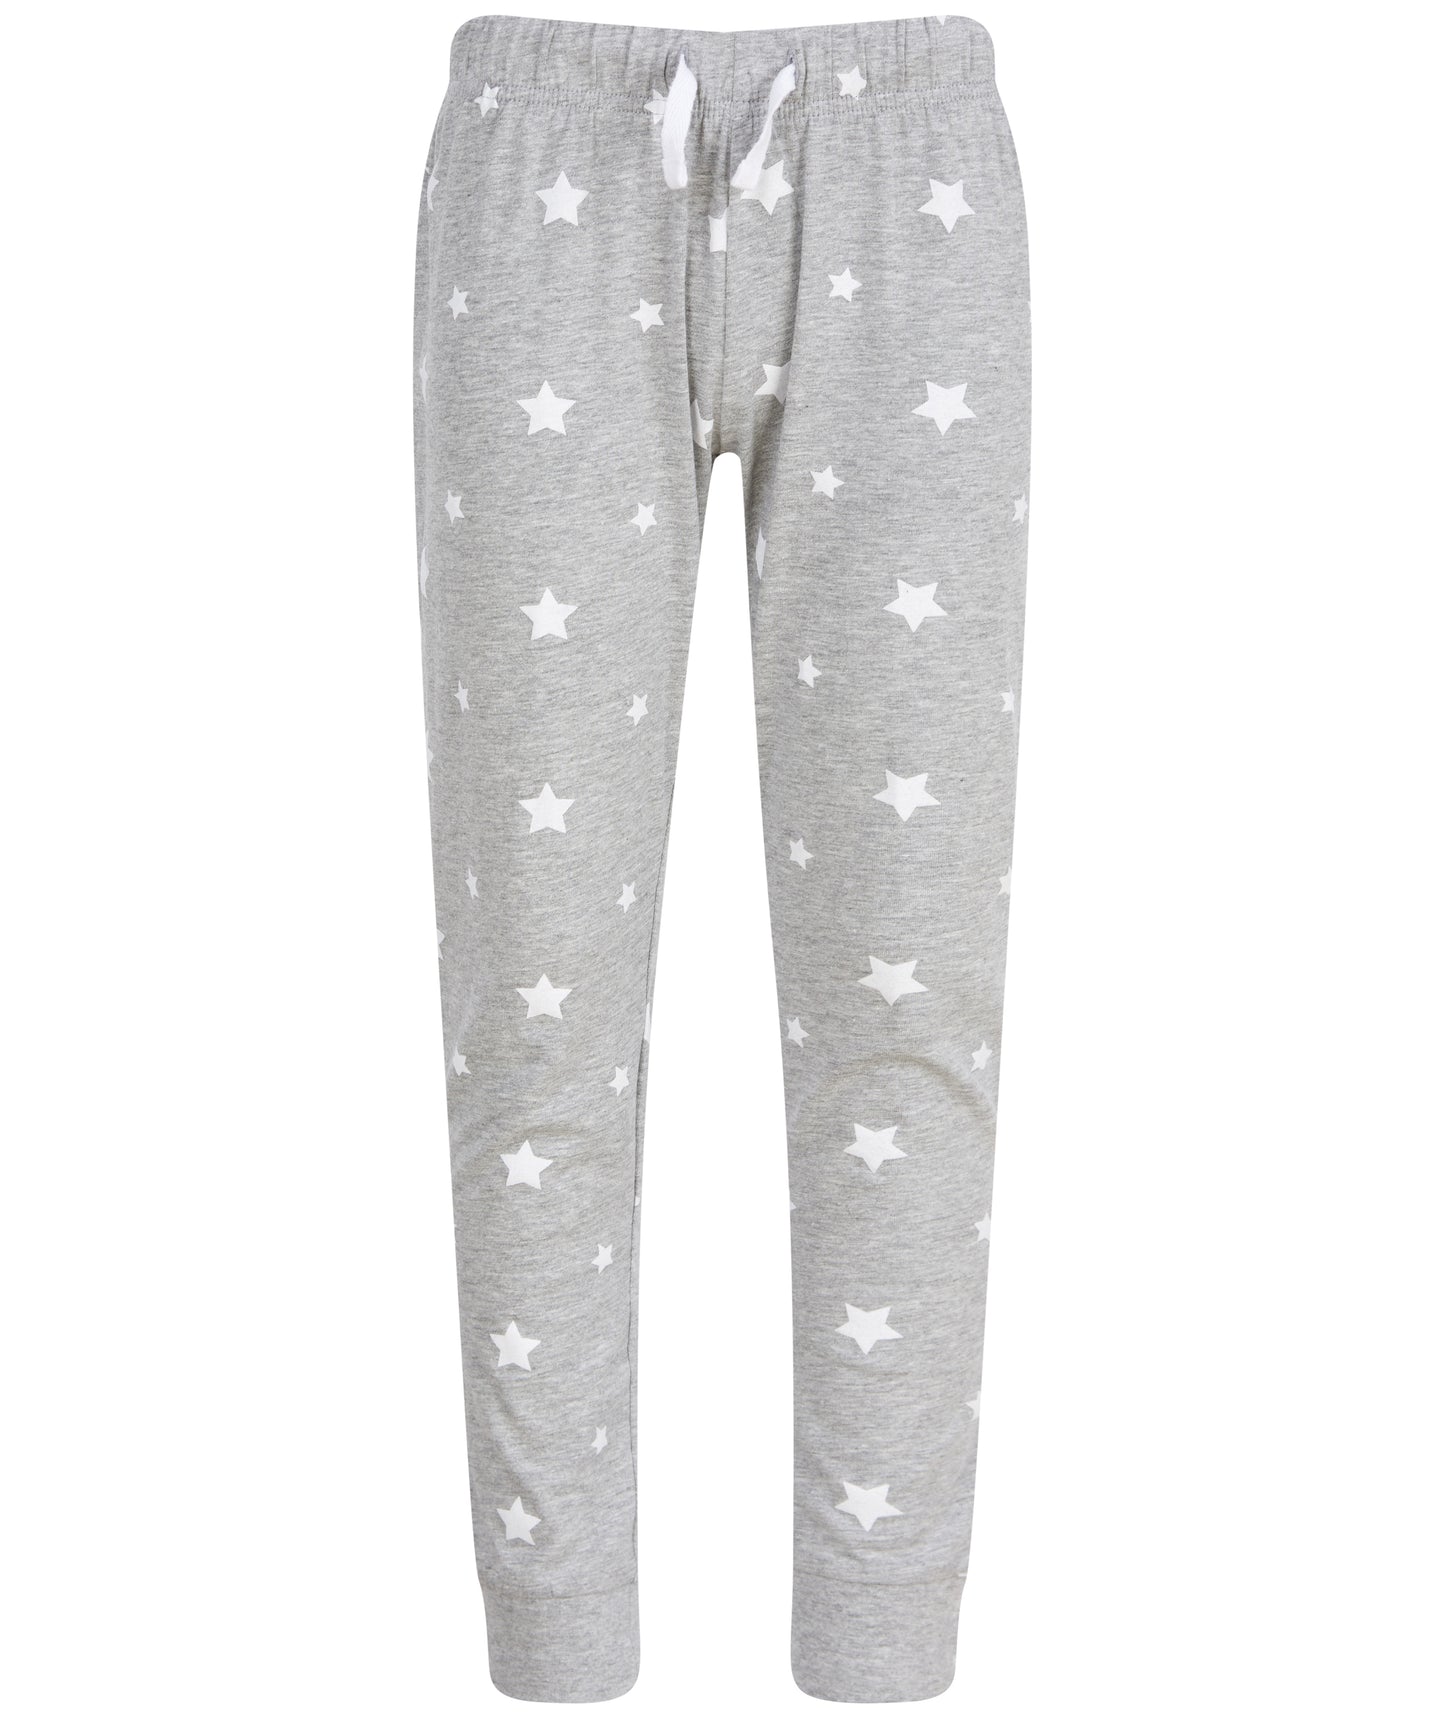 Snowman Personalised Christmas Kids Pyjamas